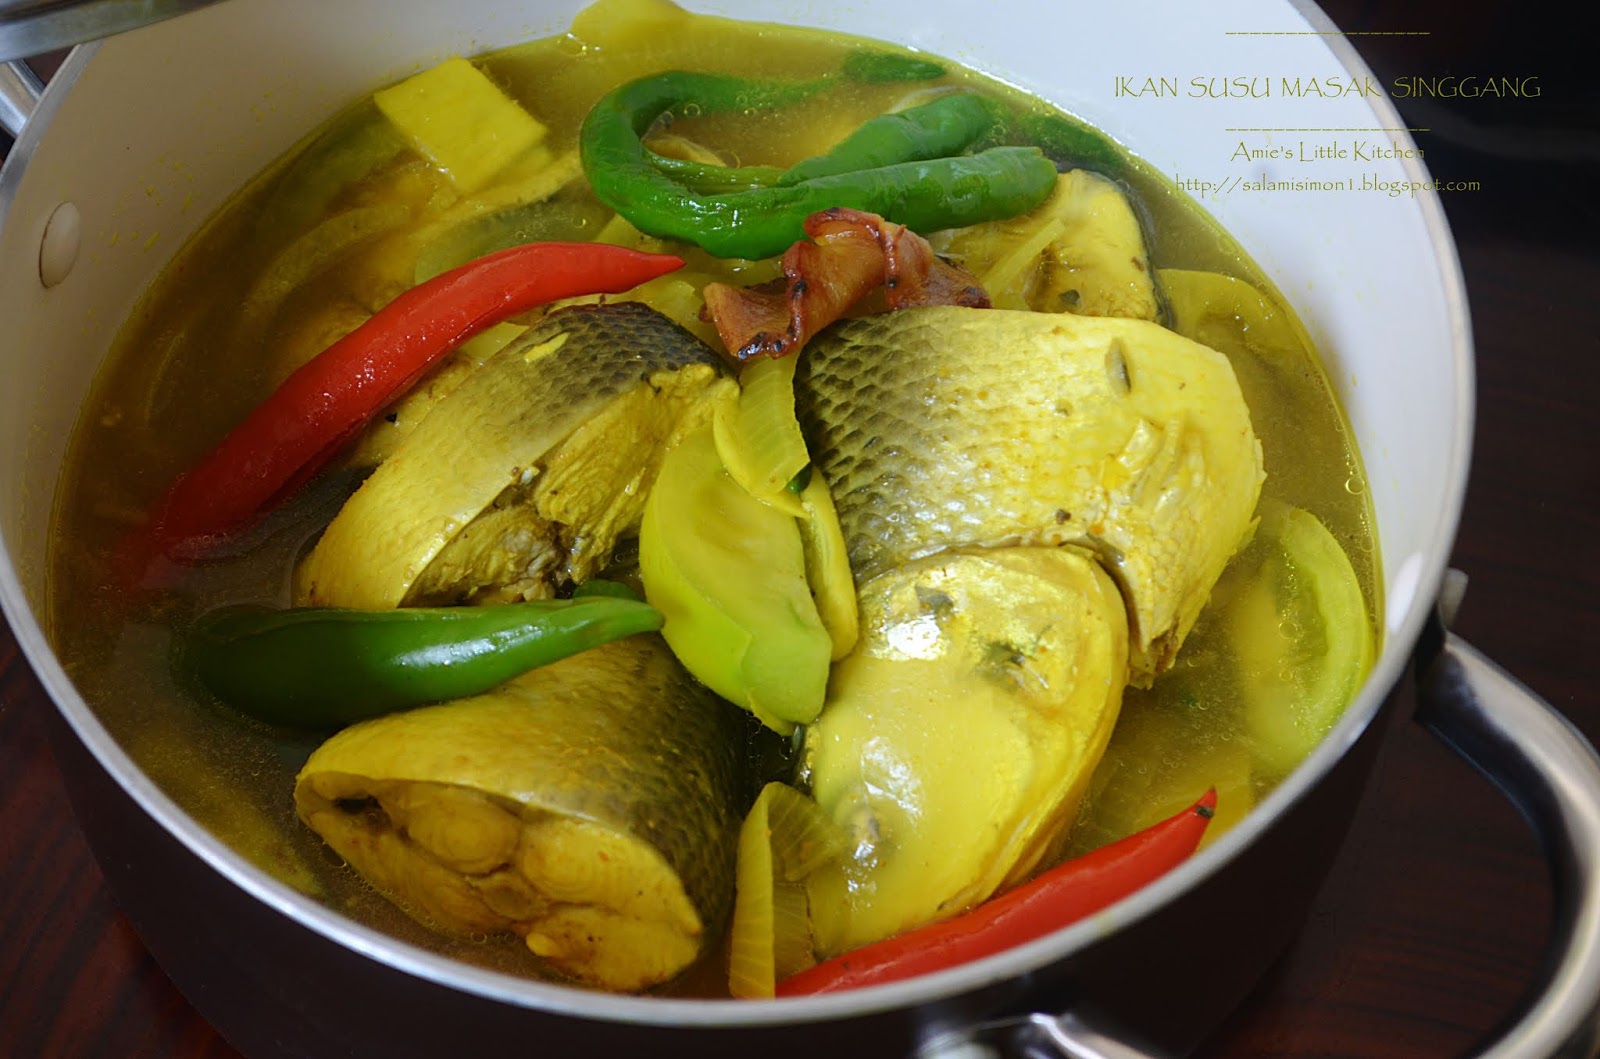 Ikan masak singgang kuning